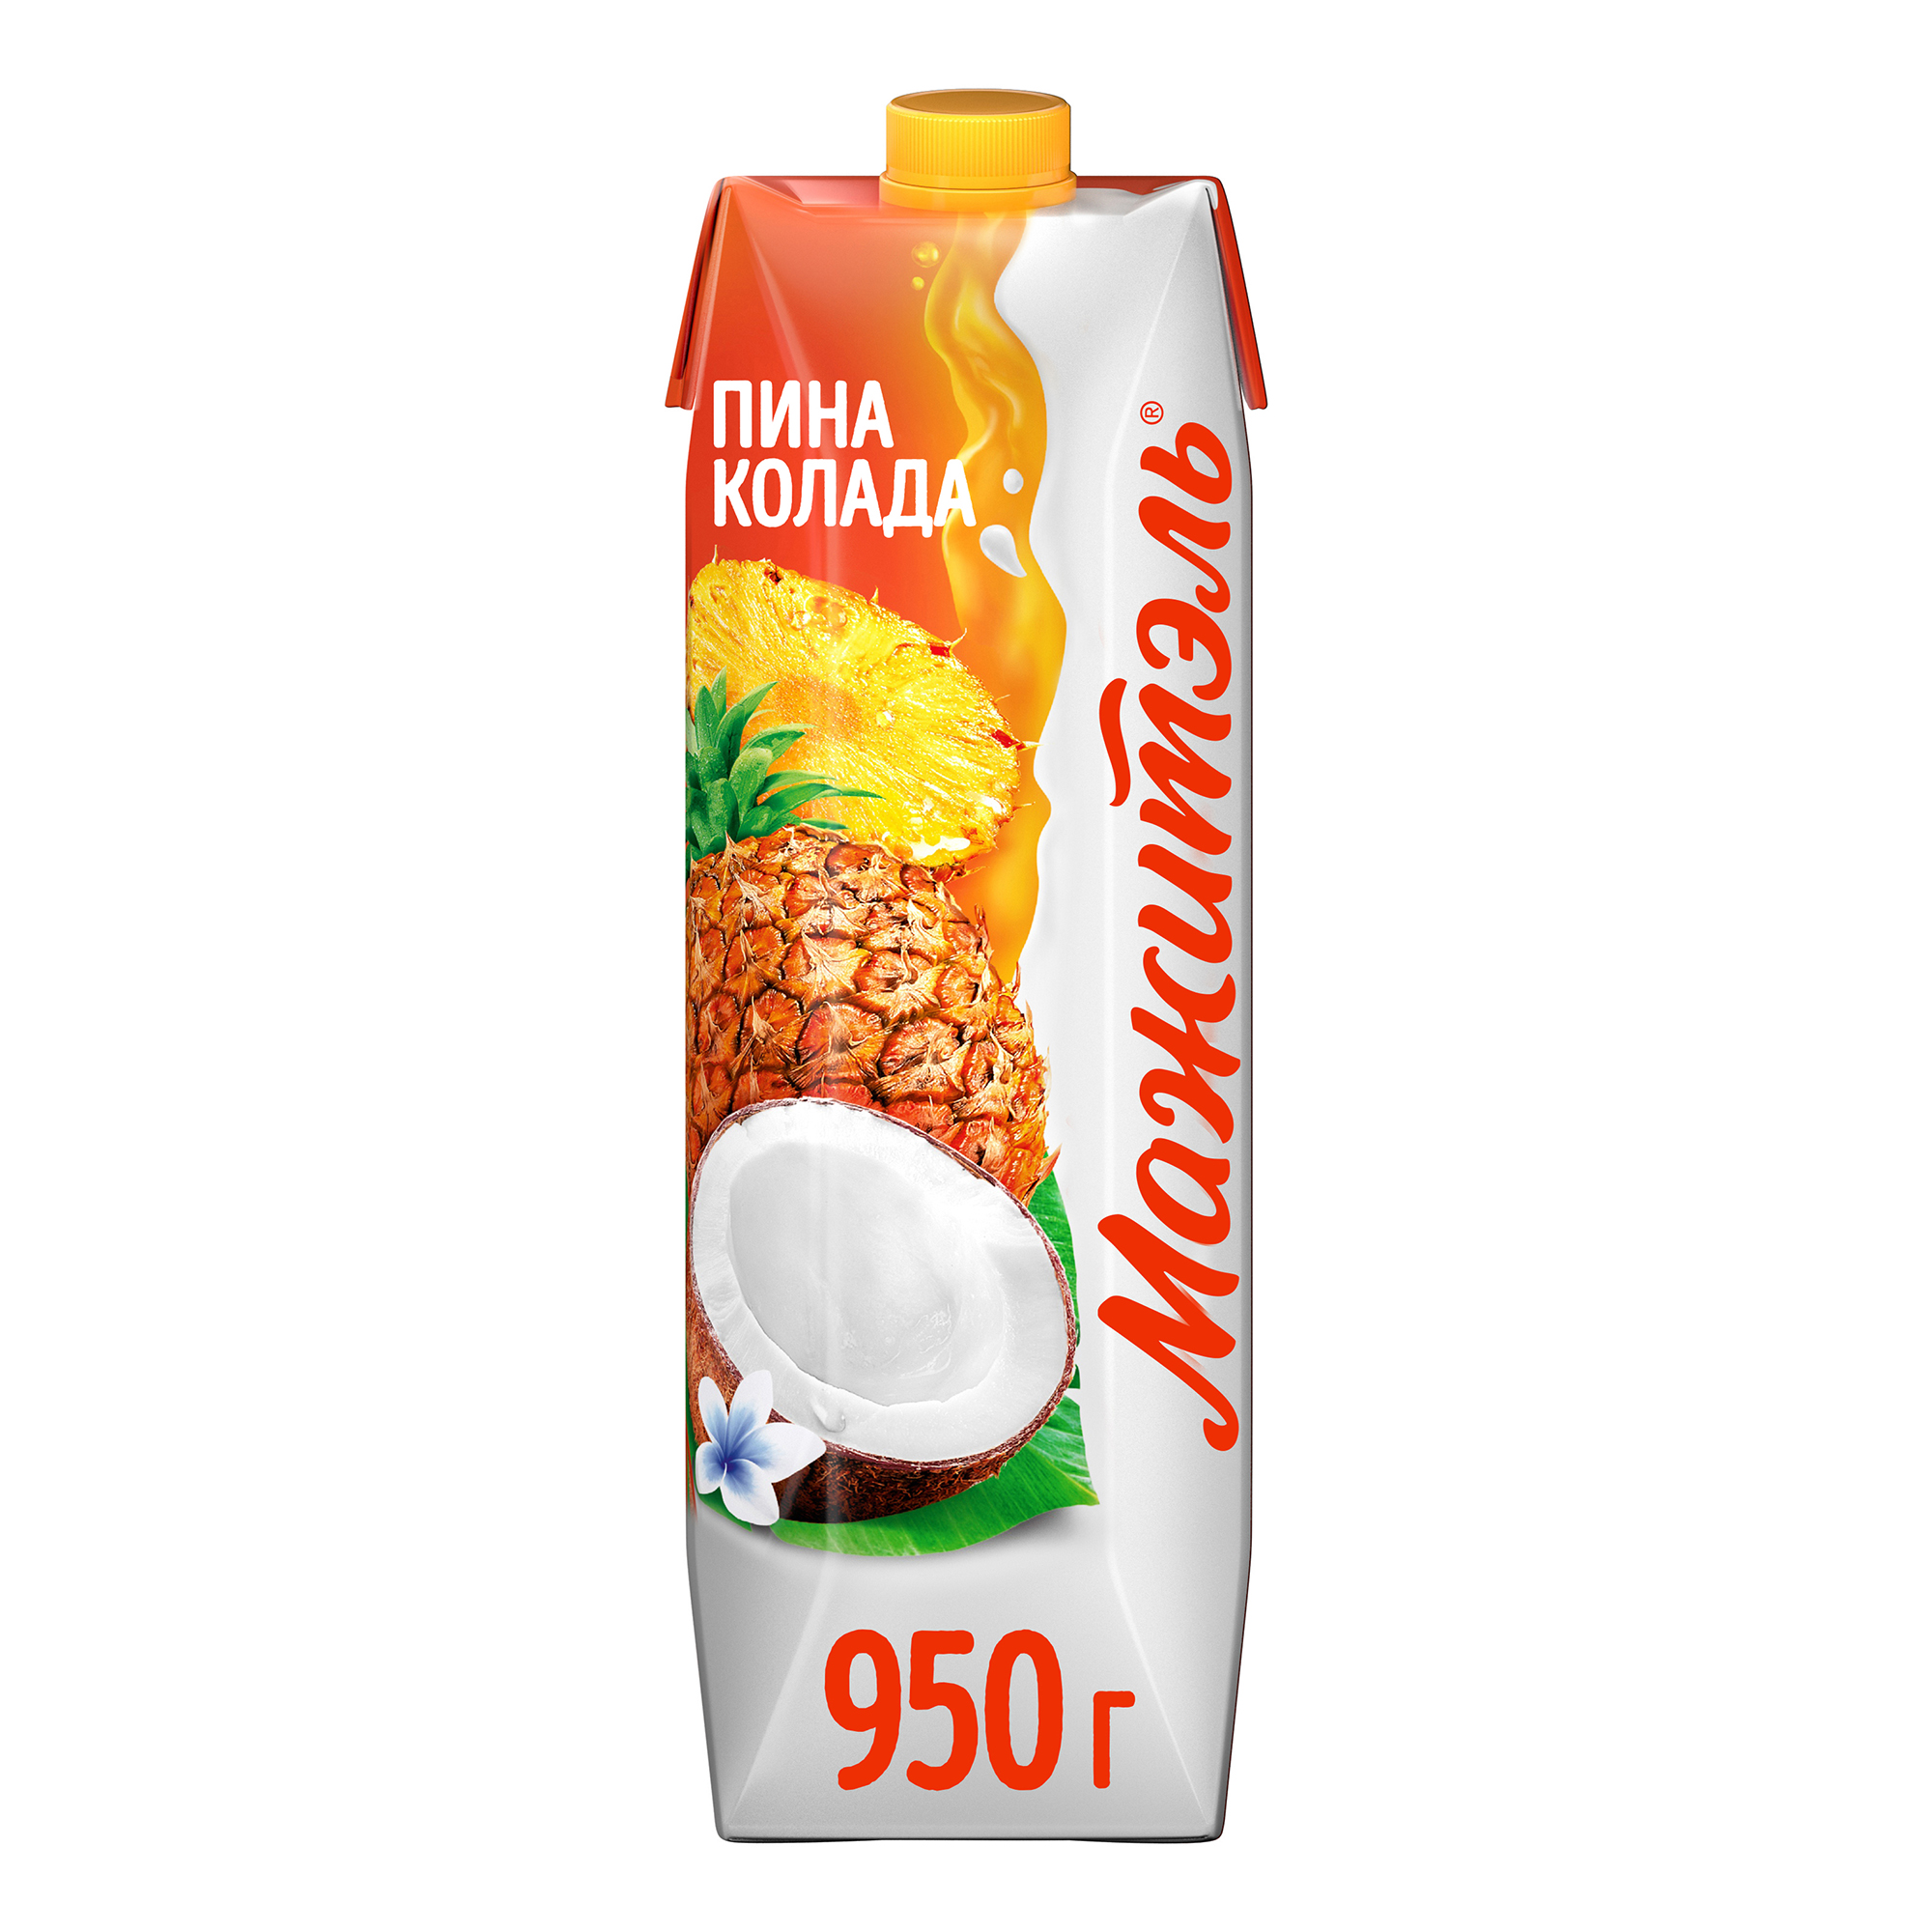 Сывороточно-молочный напиток Мажитэль Neo Пина-Колада 0,04% 950 г